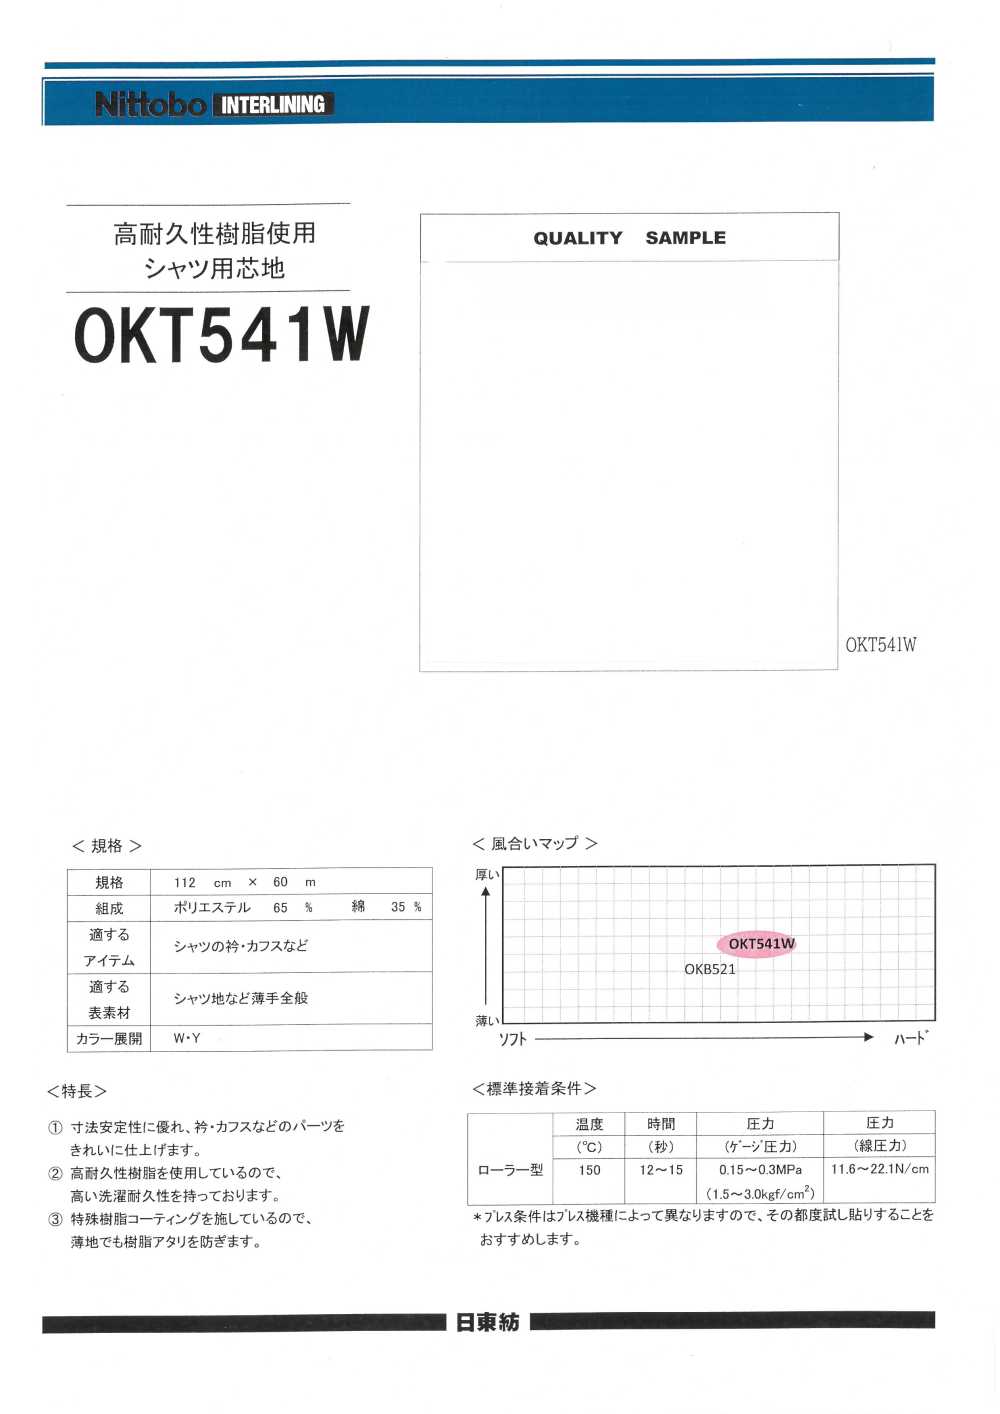 OKT541W 由高耐用樹脂製成的襯衫襯料[襯布] 日東紡績